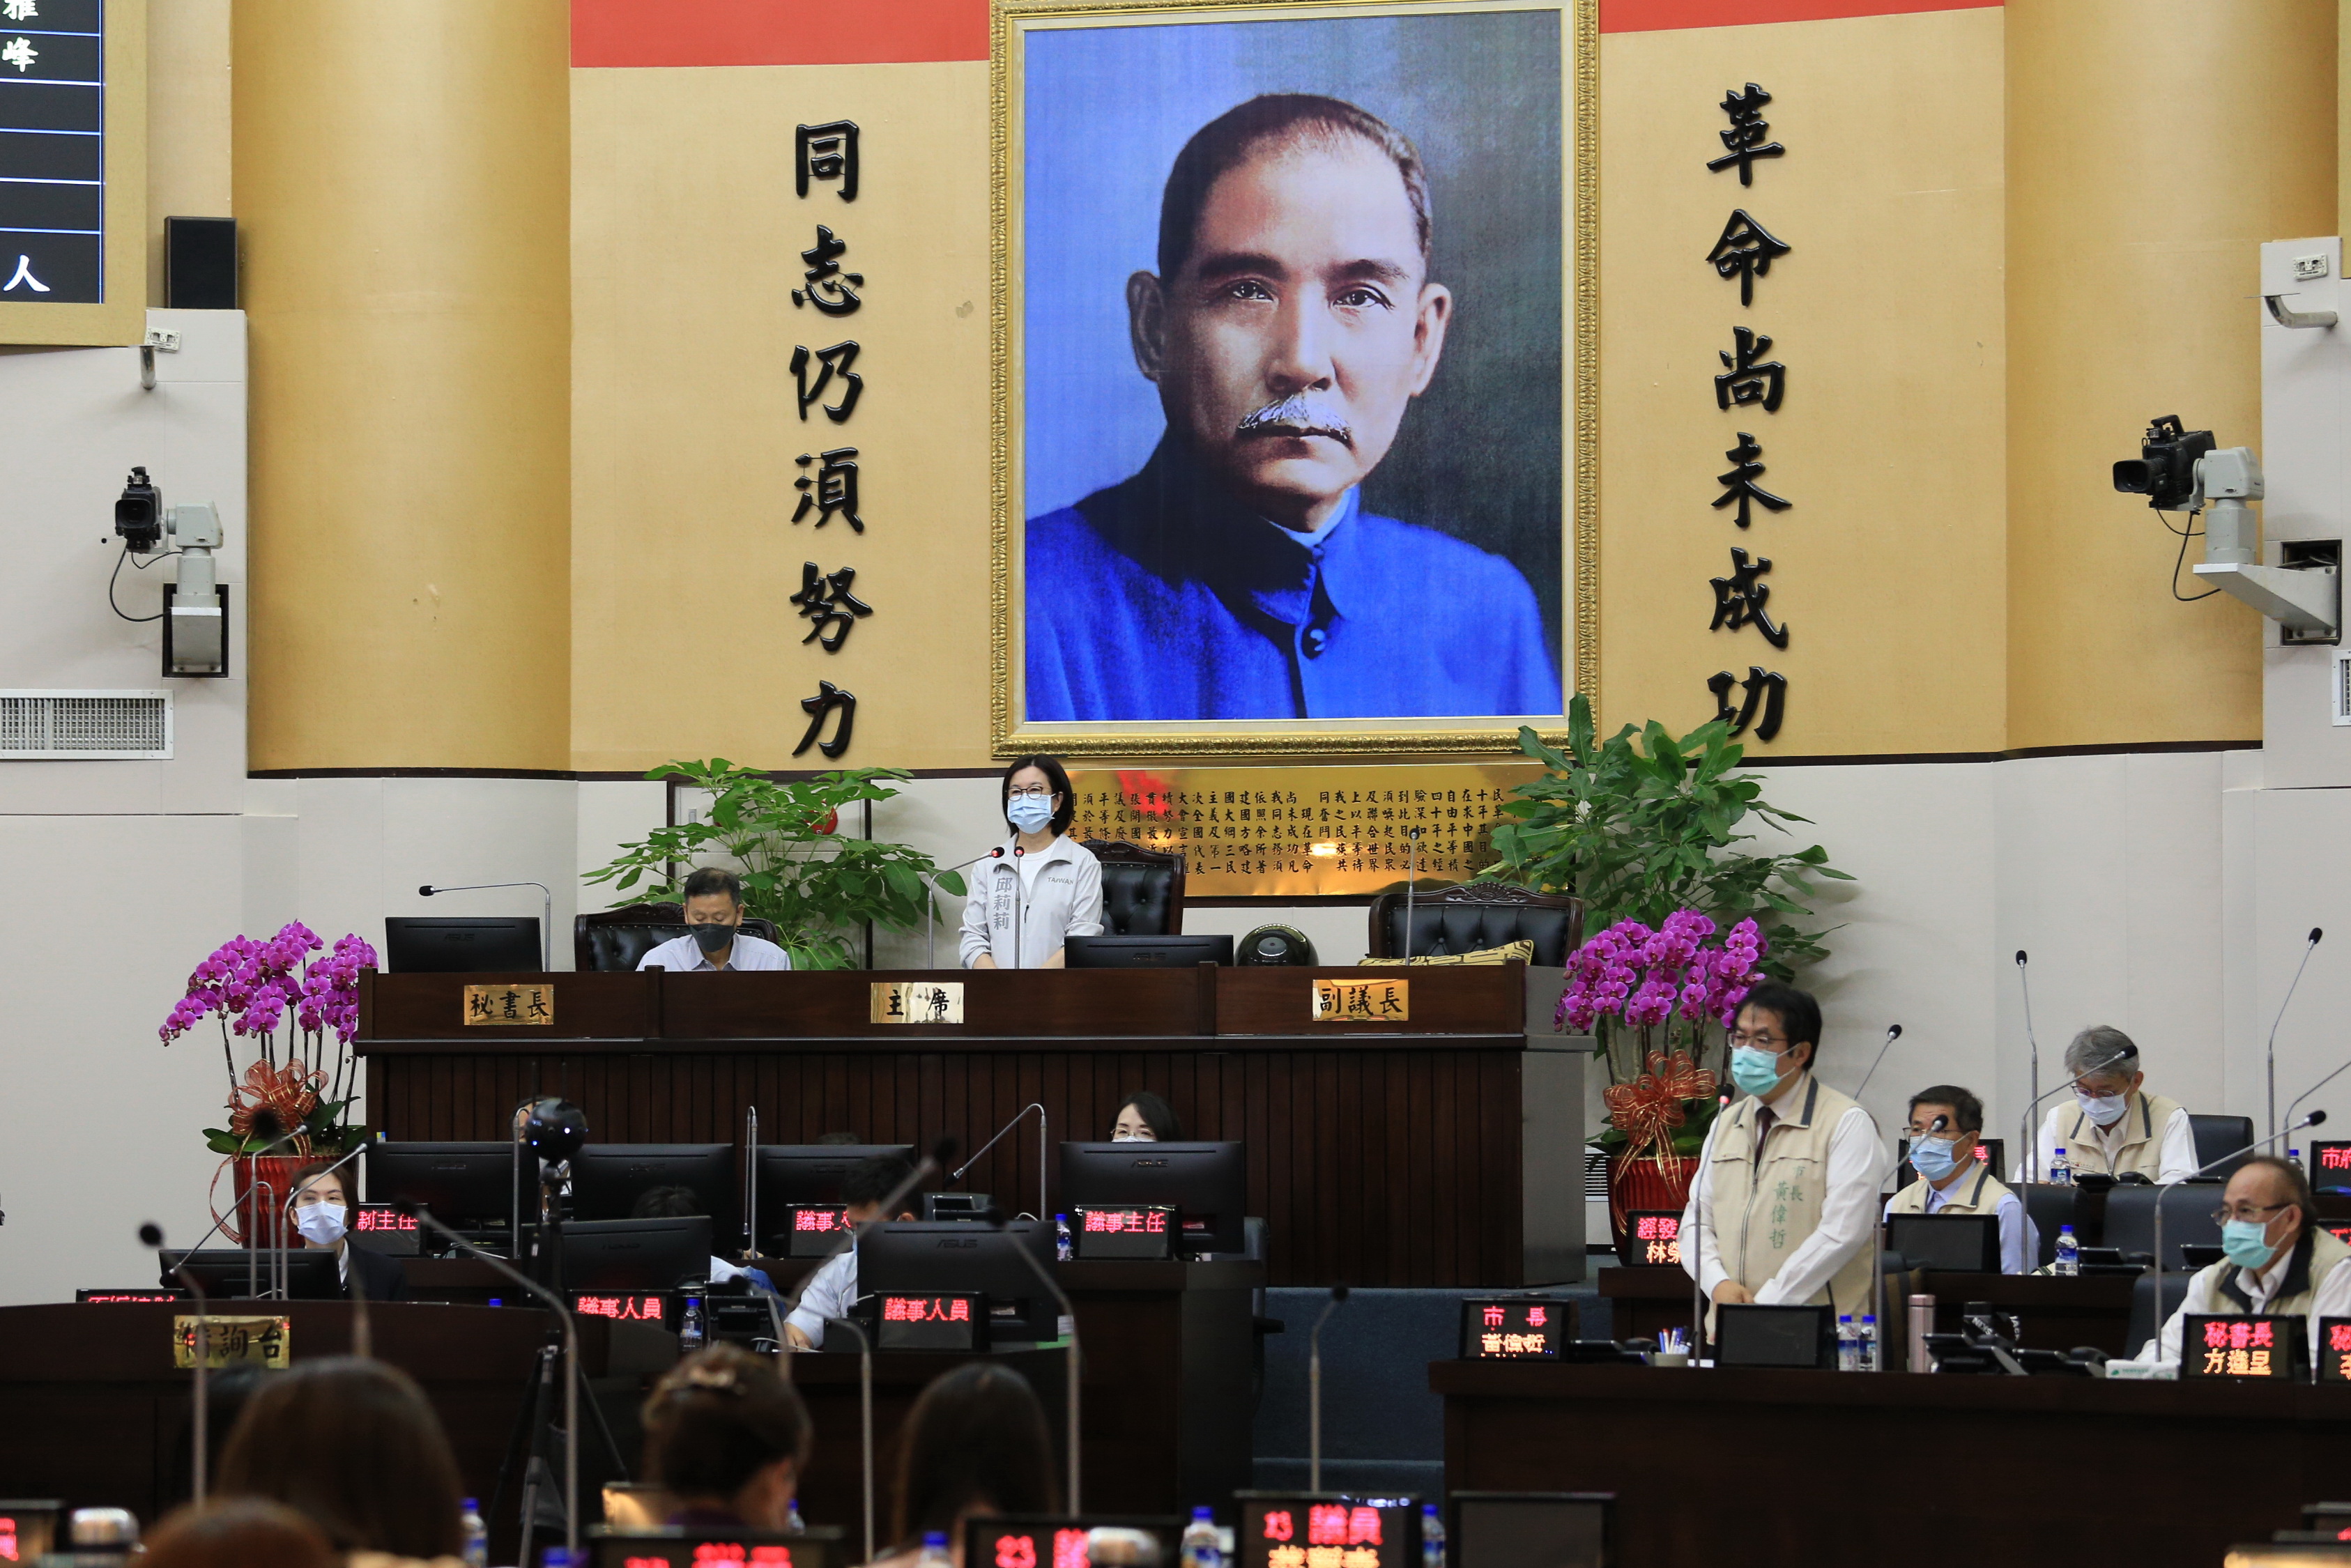 臺南市議會第4屆第1次定期會27日開議